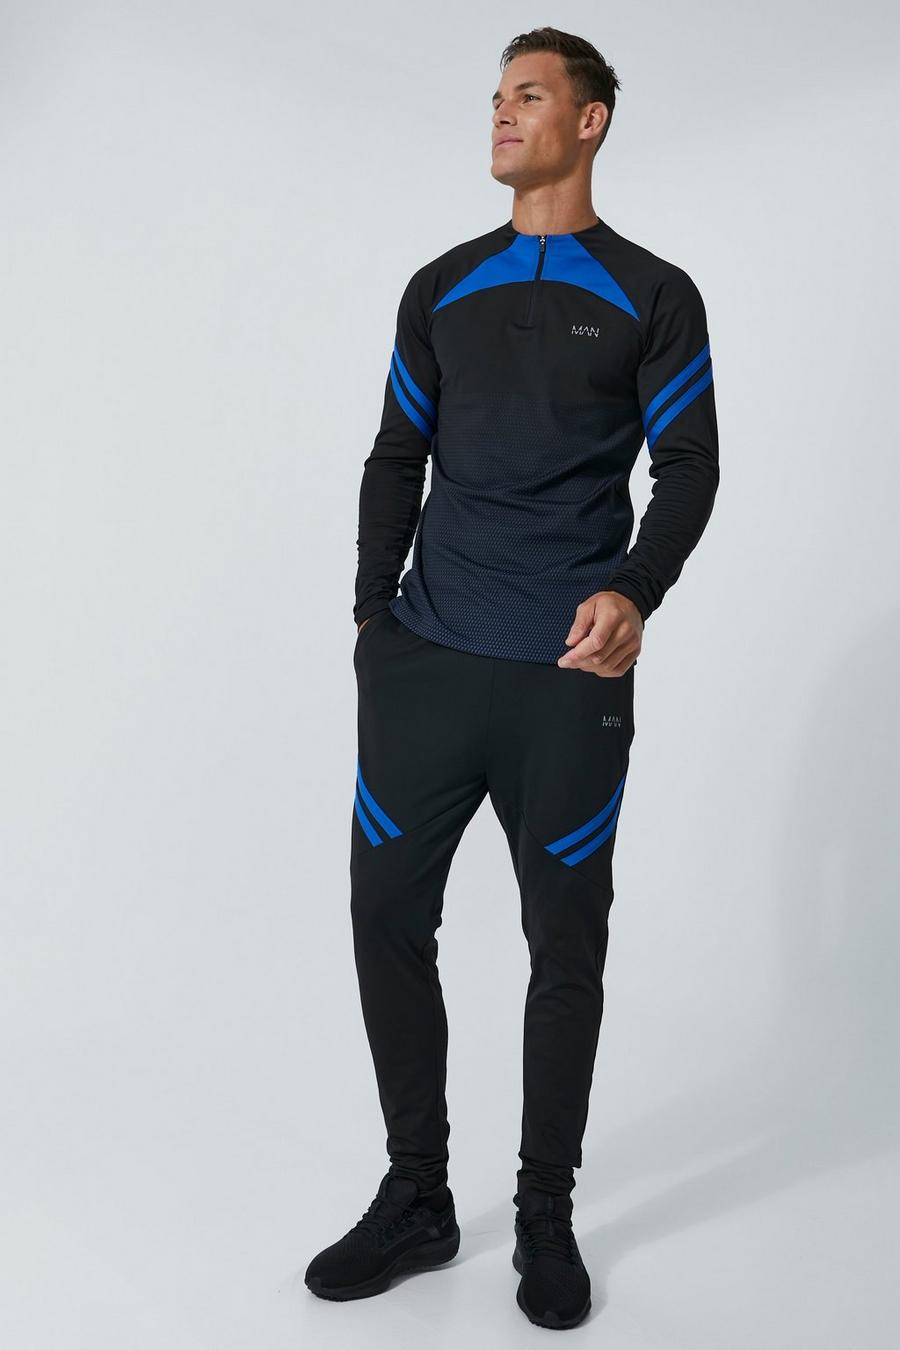 Tall Man Active Trainingsanzug mit Farbverlauf und Reißverschluss, Black schwarz